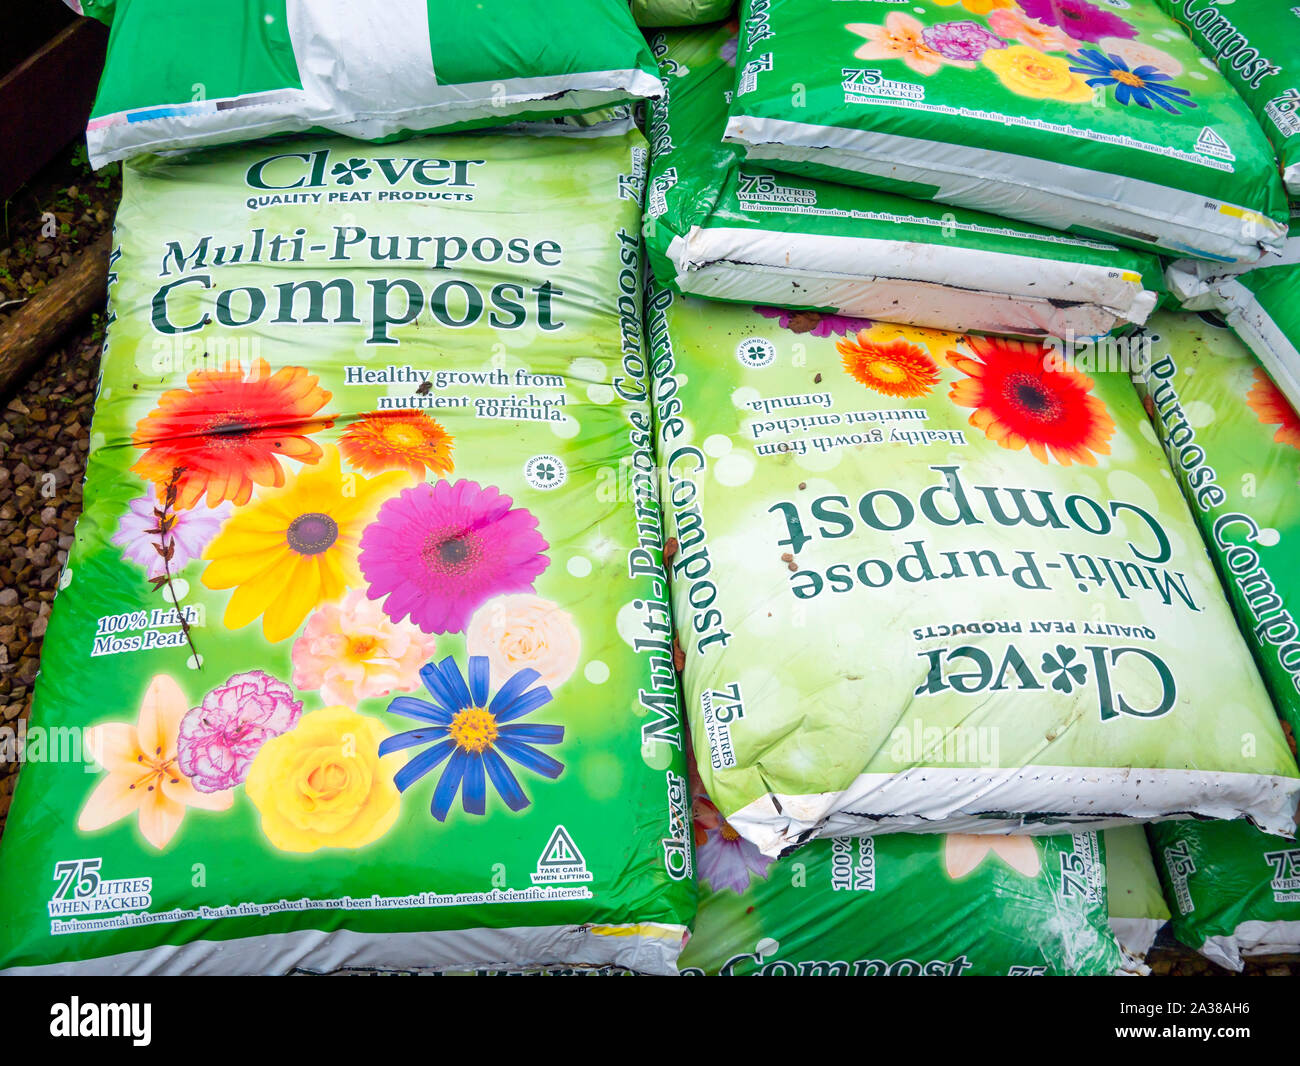 Una pila di sacchi di Clover marca contenitore composto in un garden center Foto Stock